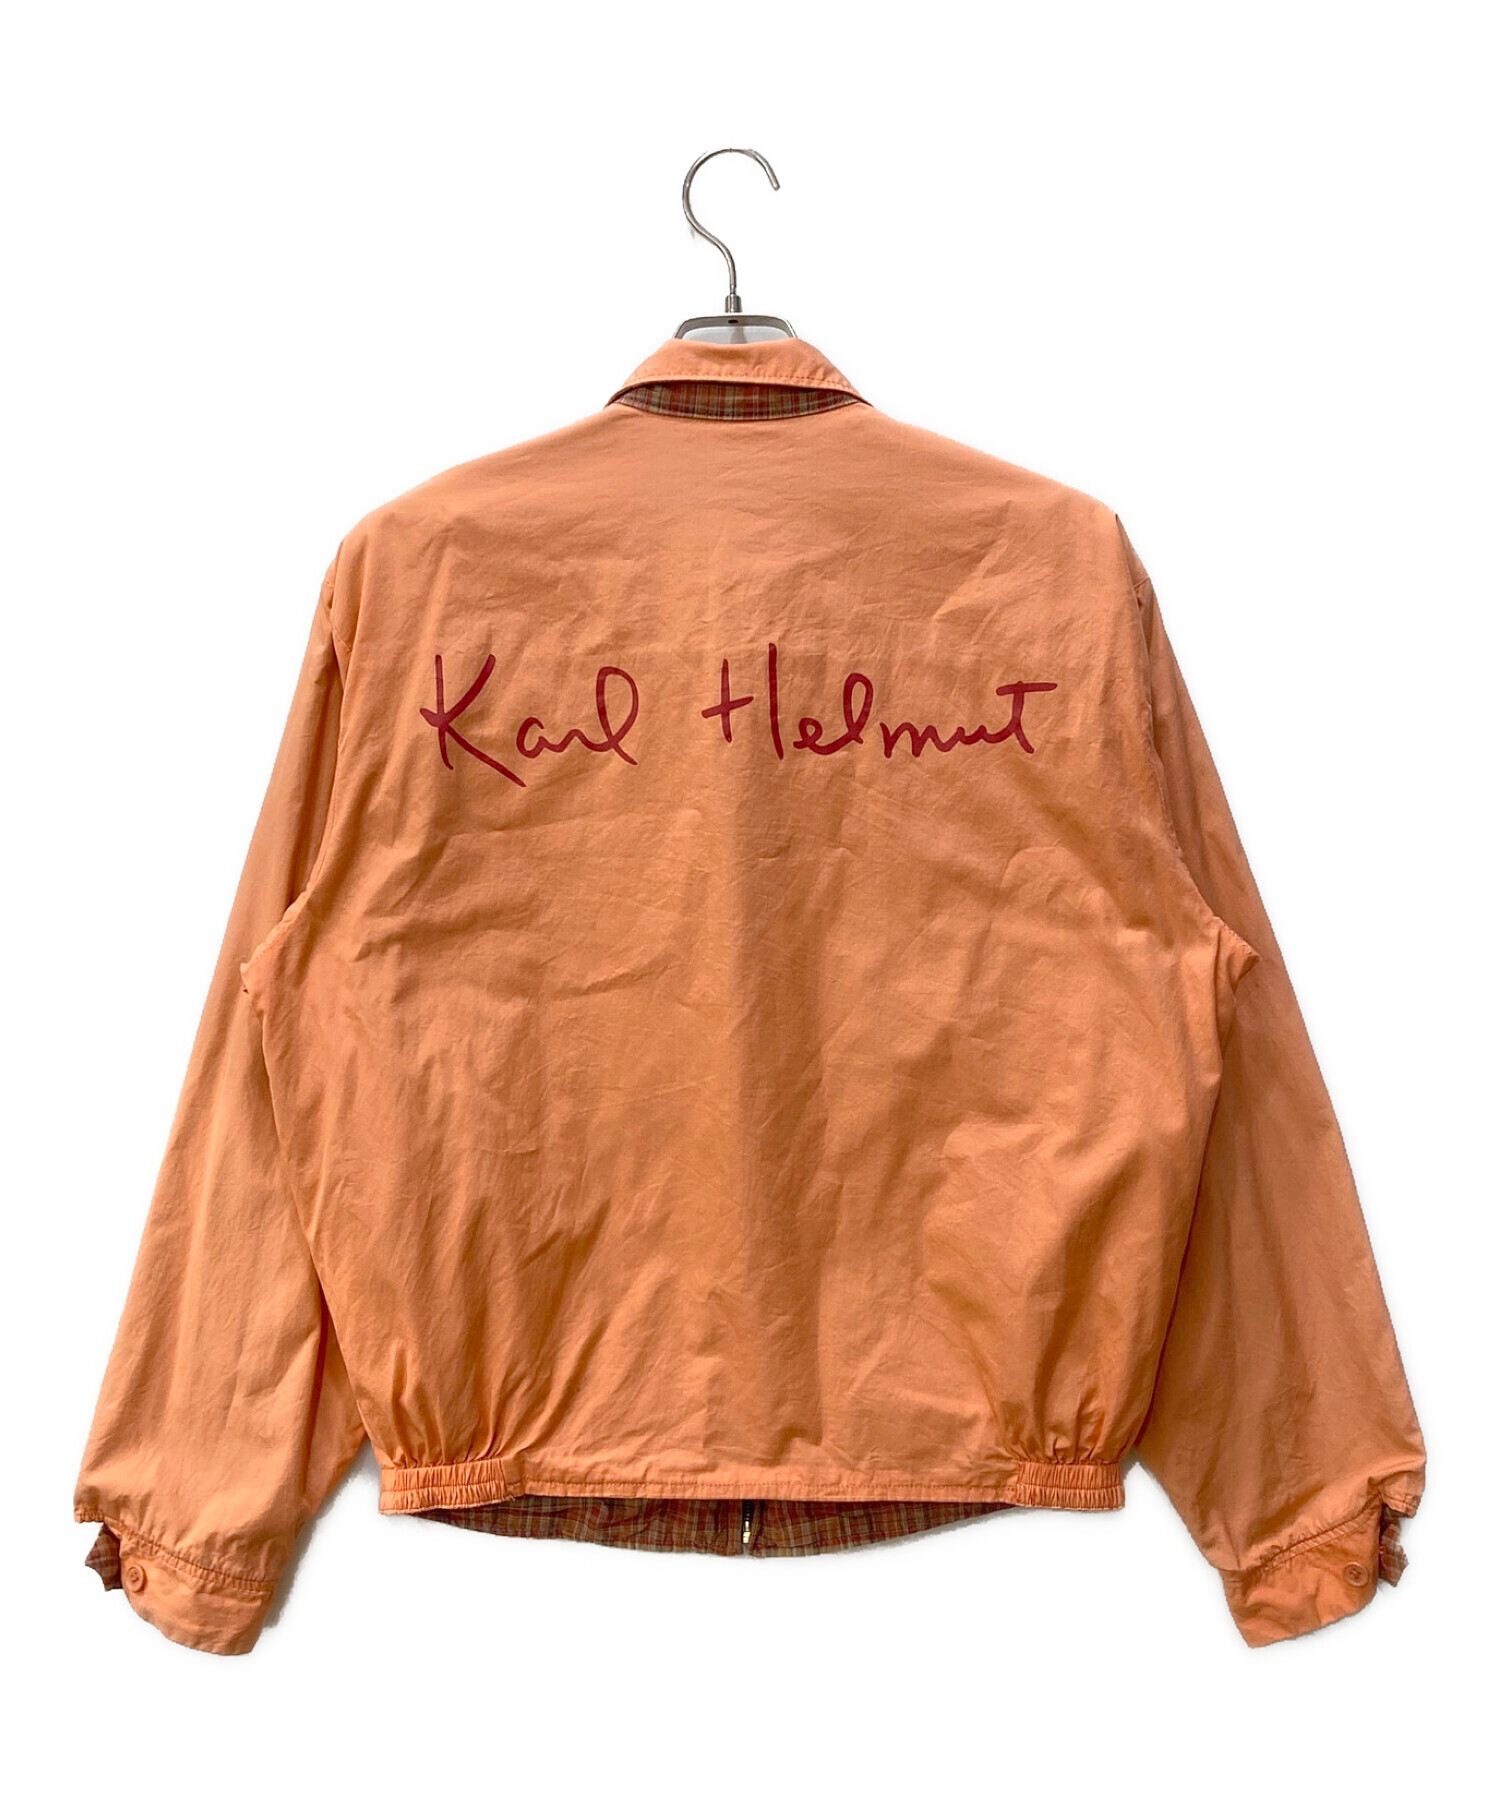 KARL HELMUT (カールヘルム) リバーシブルジャケット オレンジ サイズ:F